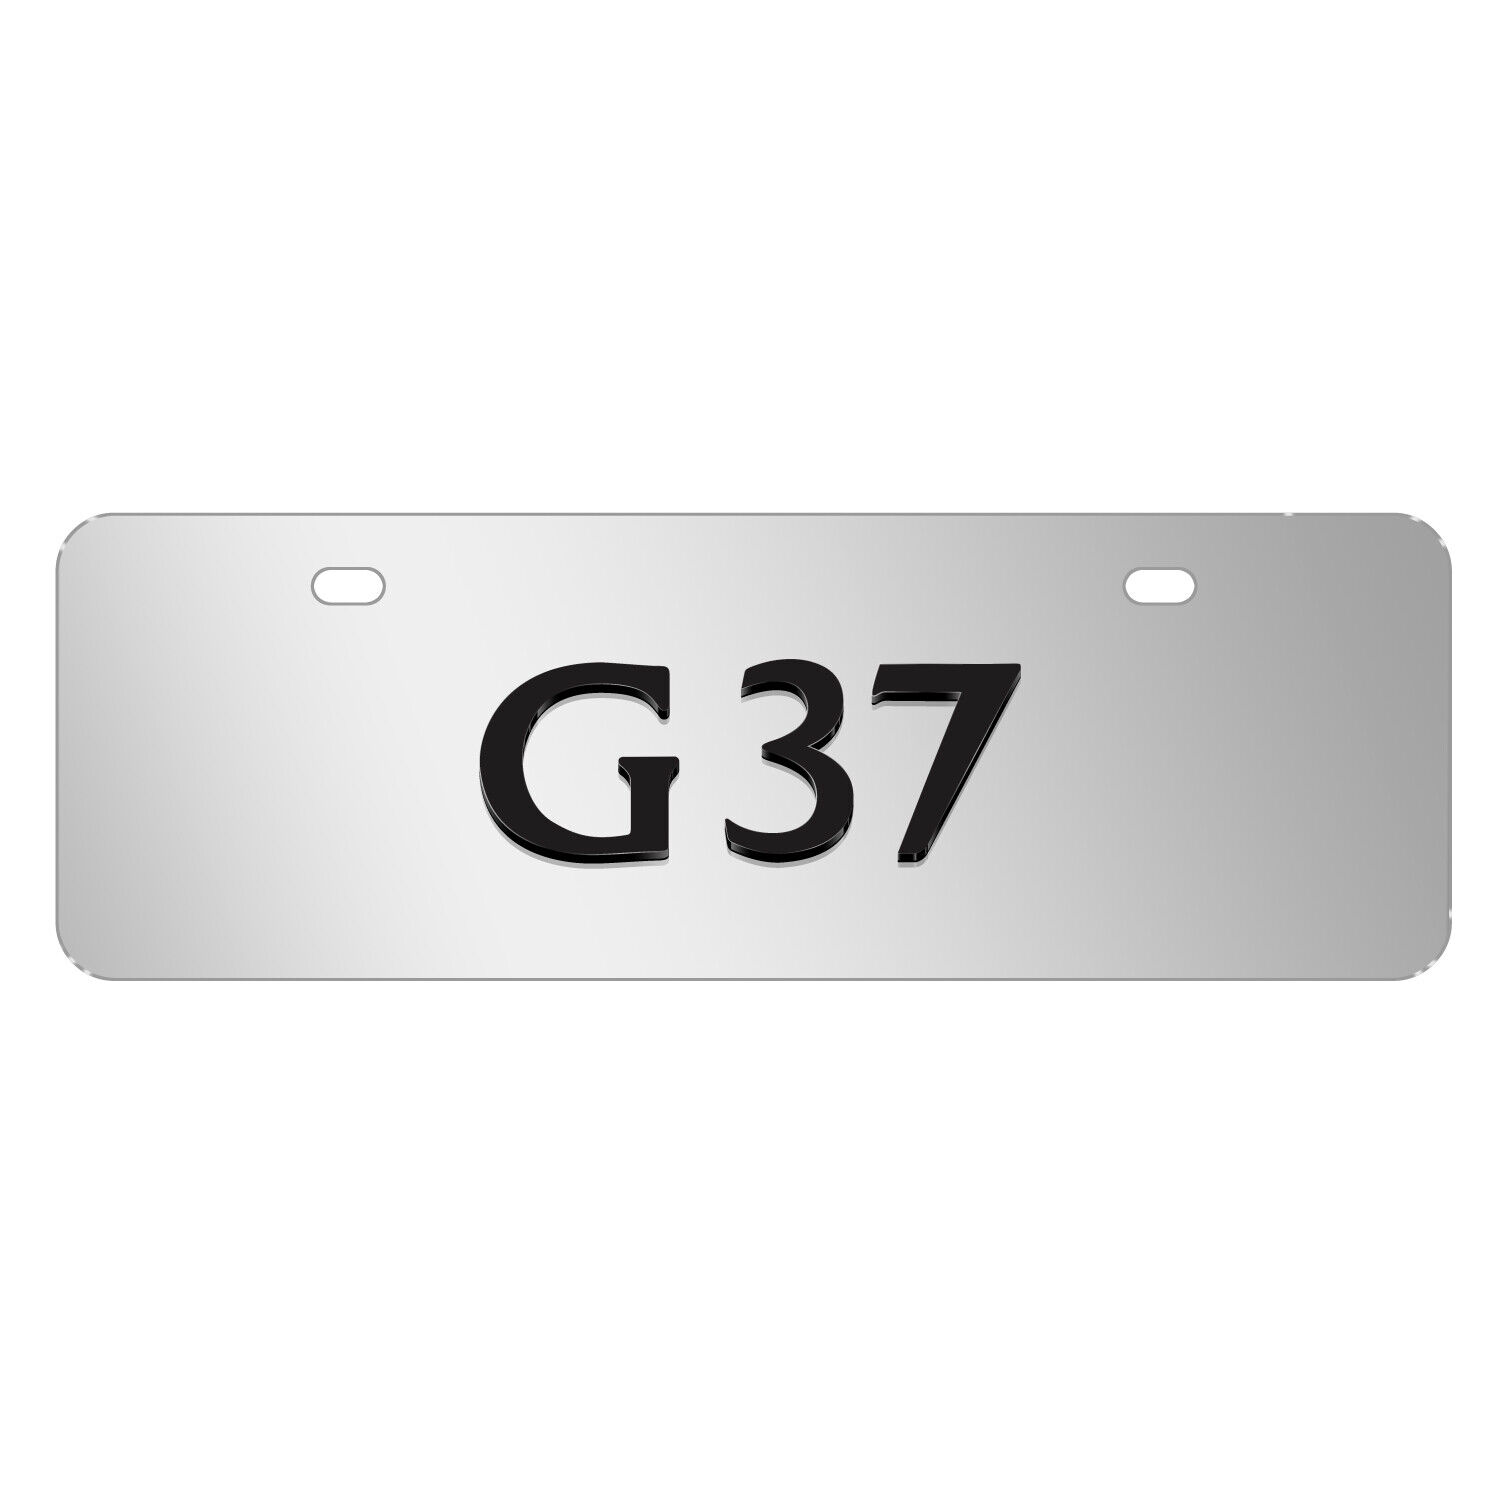 INFINITI G37 Name in 3D European Look Half-Size Brush Metal License Plate